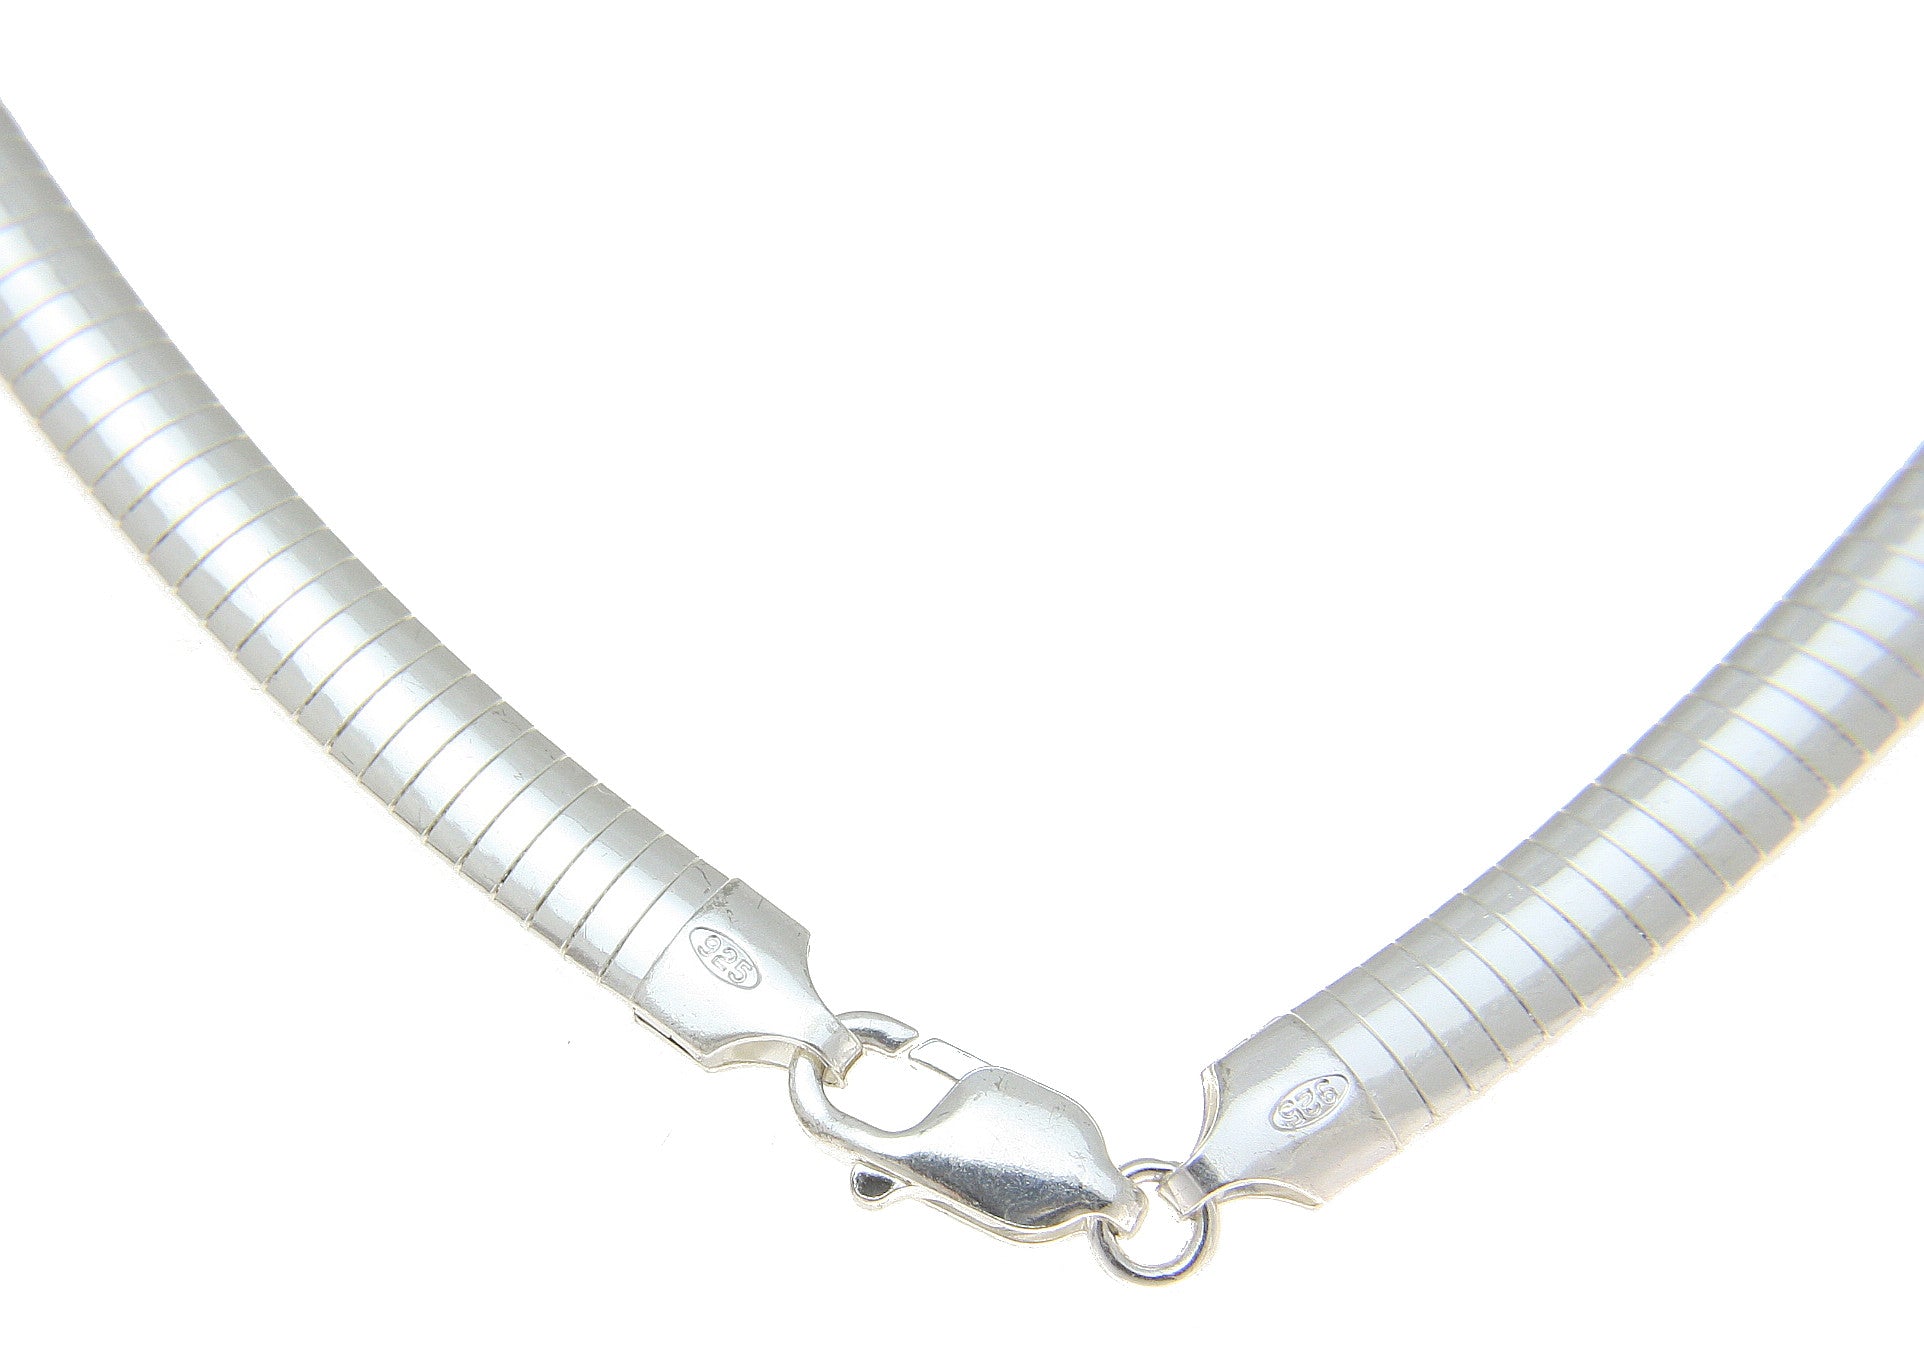 6mm omega necklace